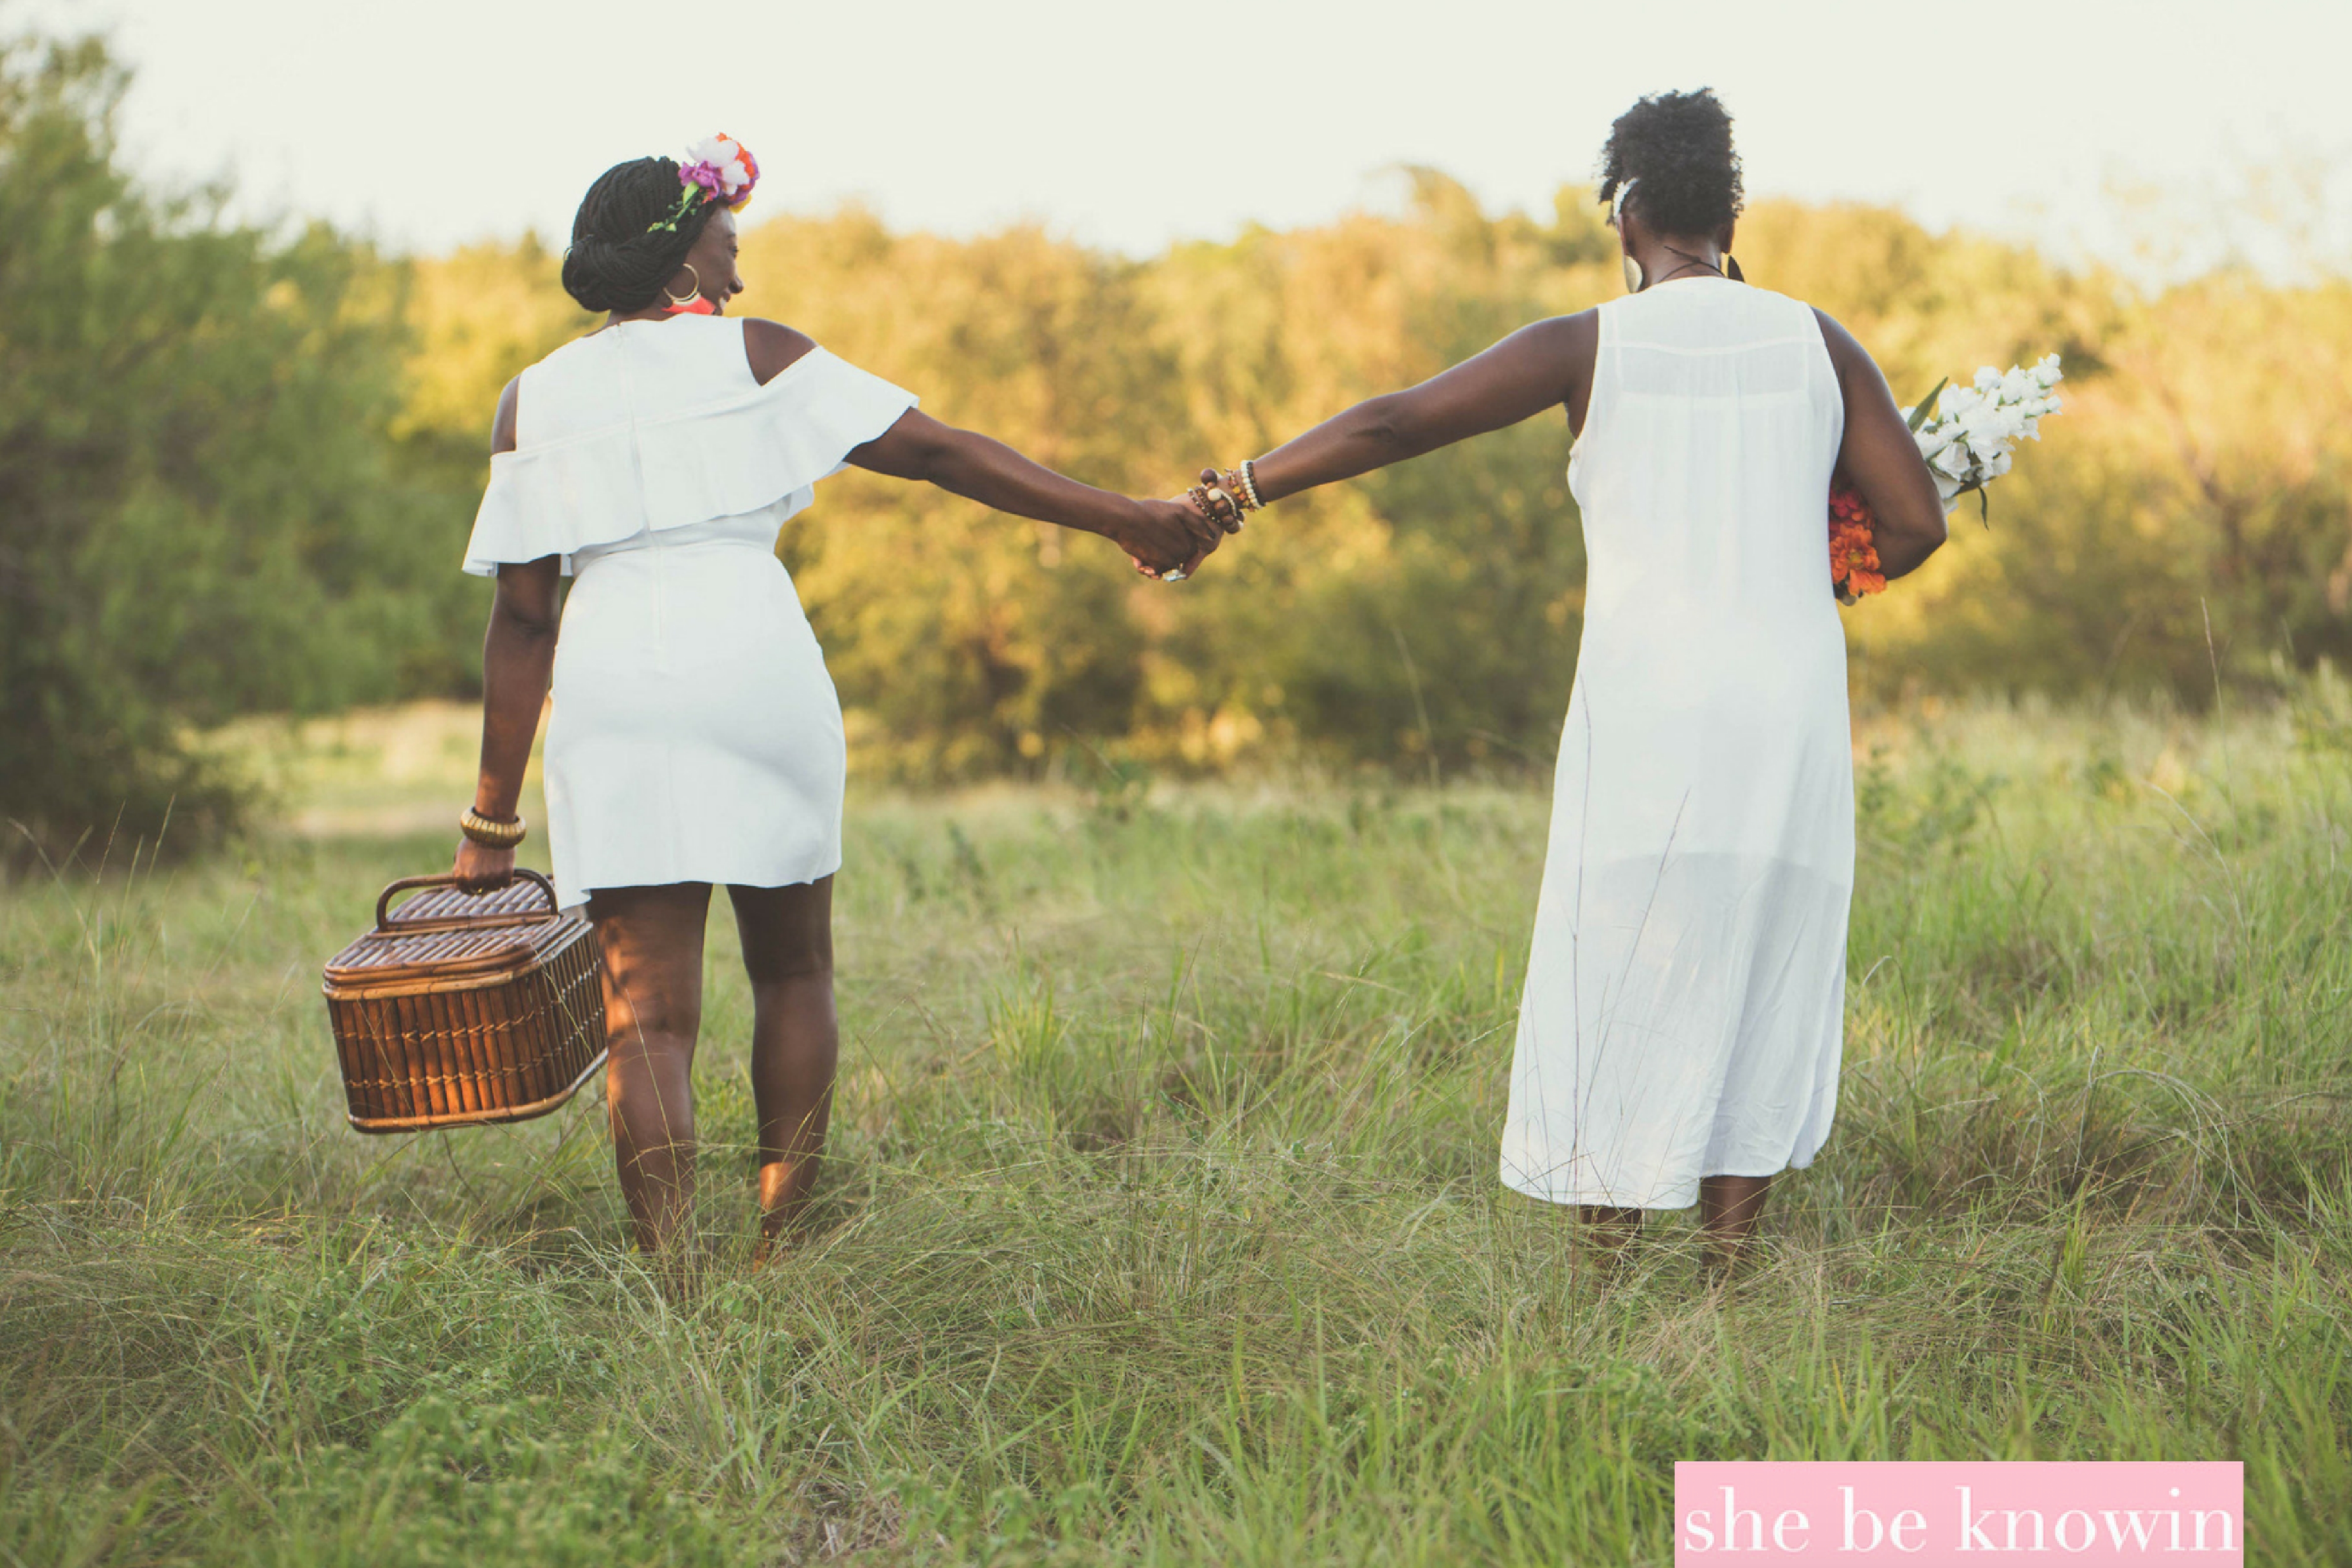 Take Heart: 9 Tips for Black Girl Self Care